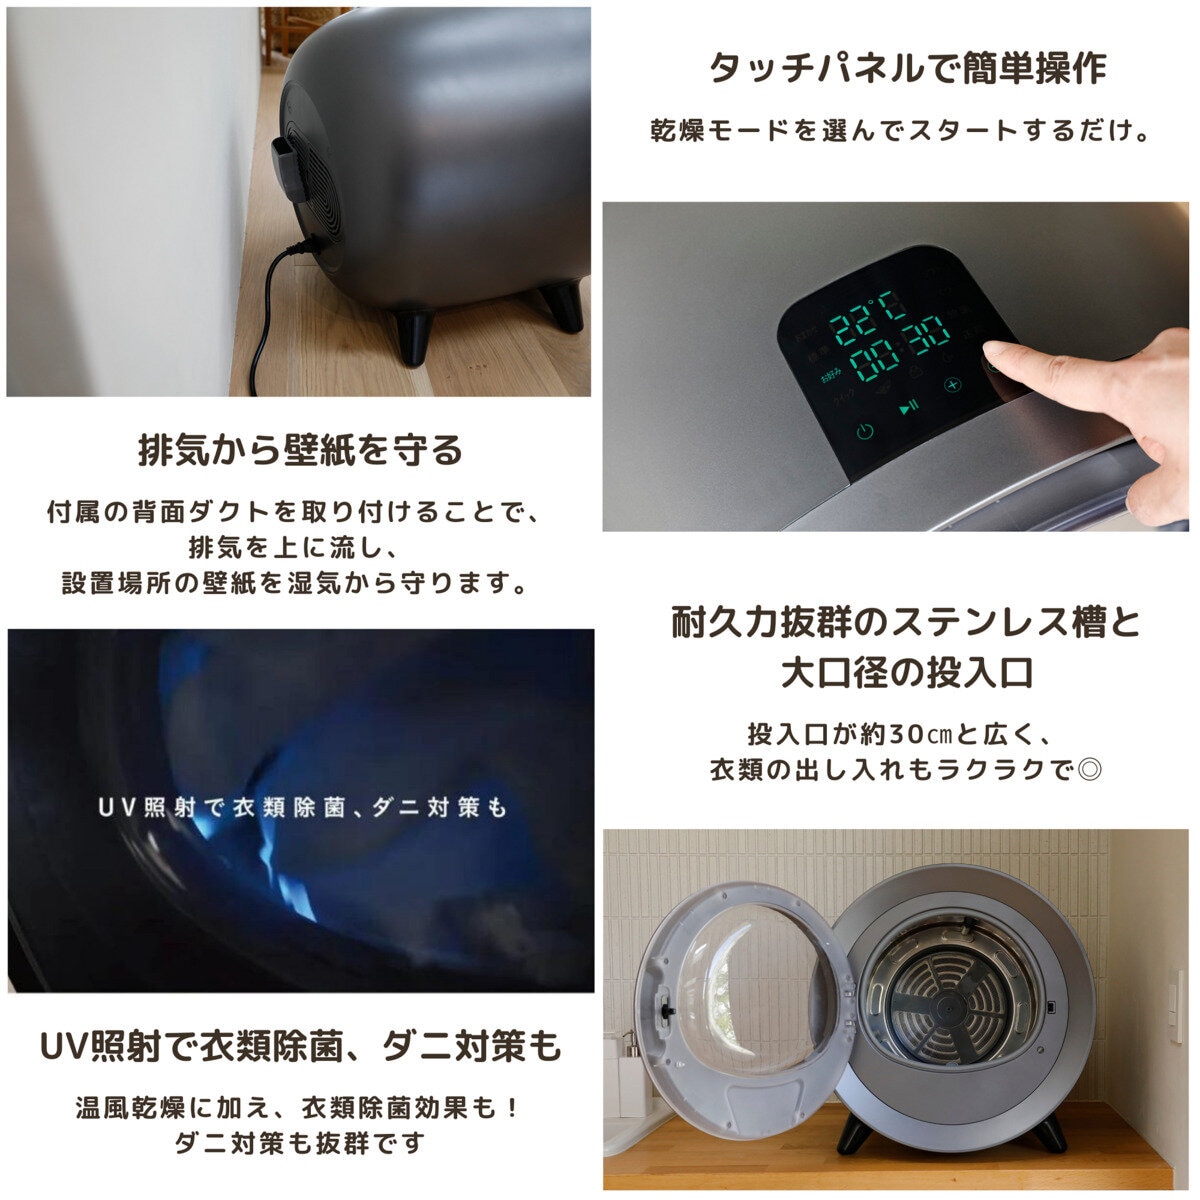 シーシーピー レイアウトフリー衣類乾燥機 ZJ-CD43 | Costco Japan